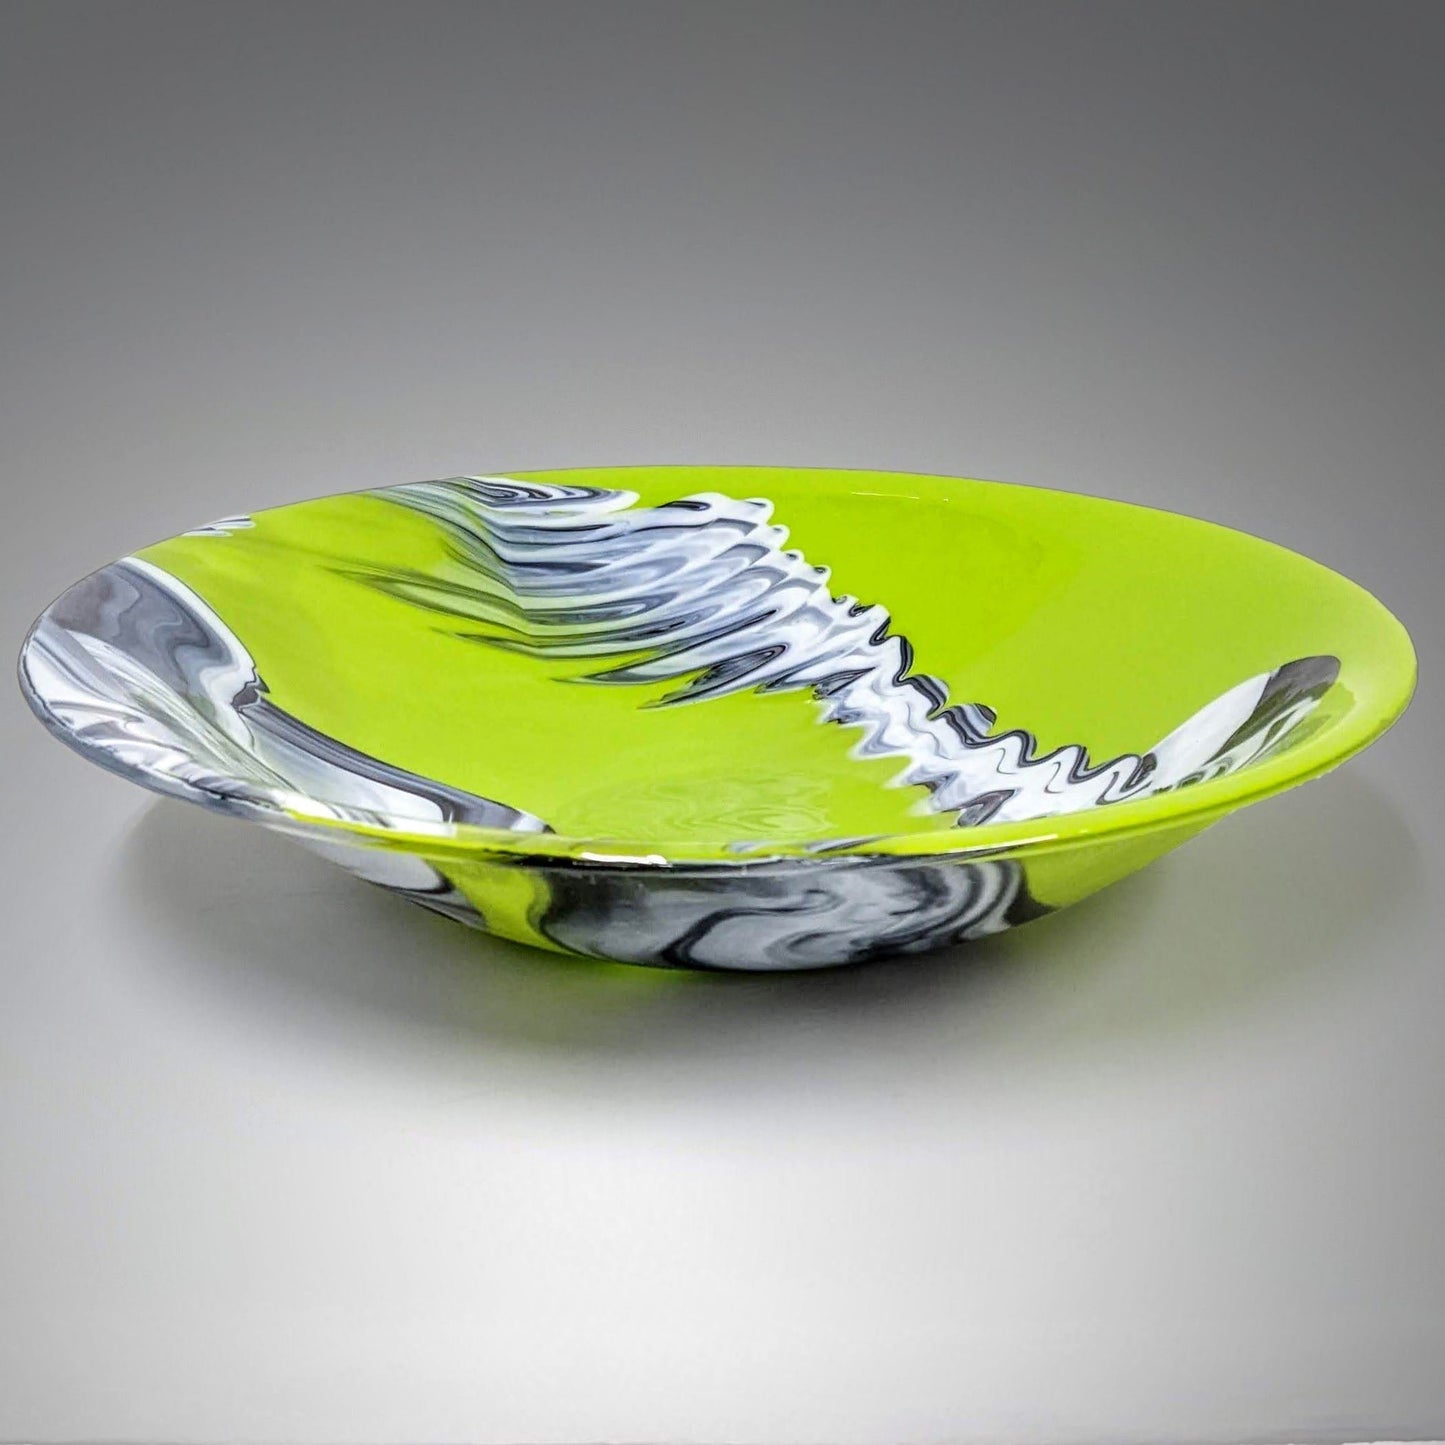 Ultra Modern Glass Art Centerpiece Bowl in Lime Green